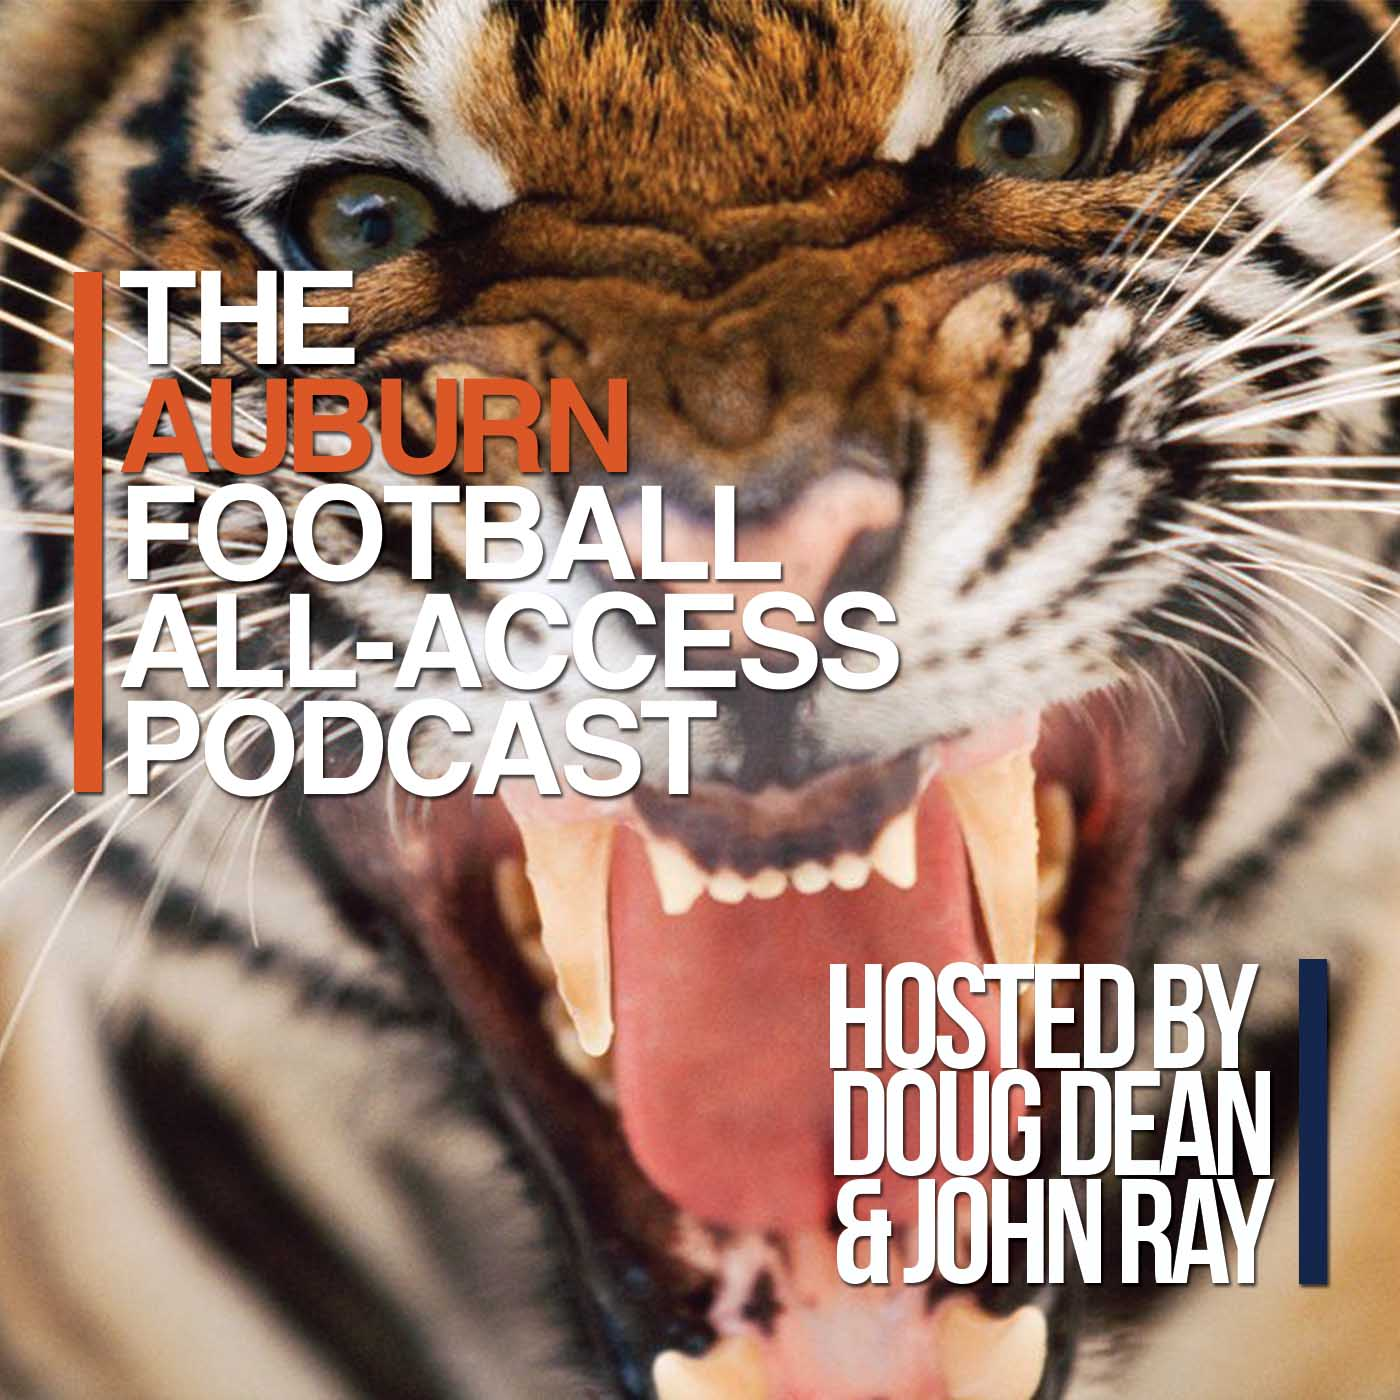 Auburn Football All-Access Podcast